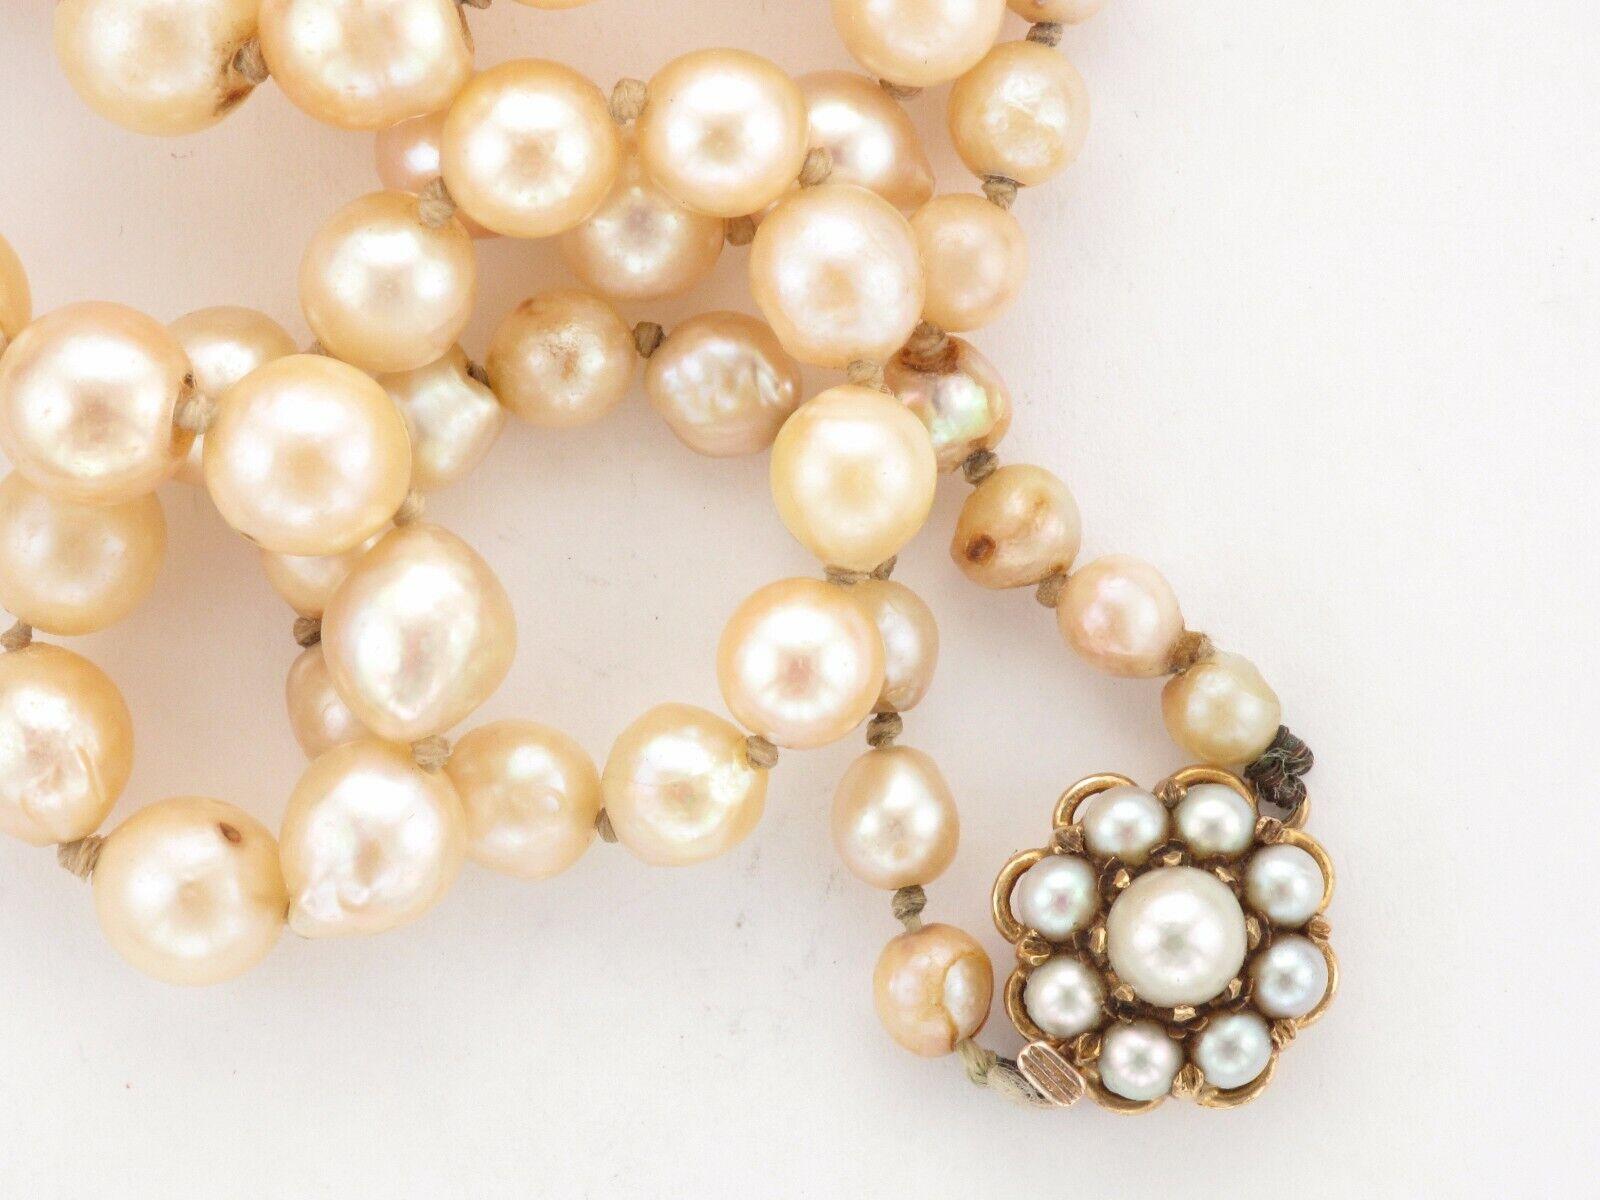 Abgestufte Perlenkette mit einem 9-karätigen Perlenverschluss

Diese elegante Halskette mit einem Verschluss aus 9-karätigem Gelbgold und einer abgestuften Perlenkette eignet sich perfekt für eine Hochzeit, einen Abschlussball oder eine formelle